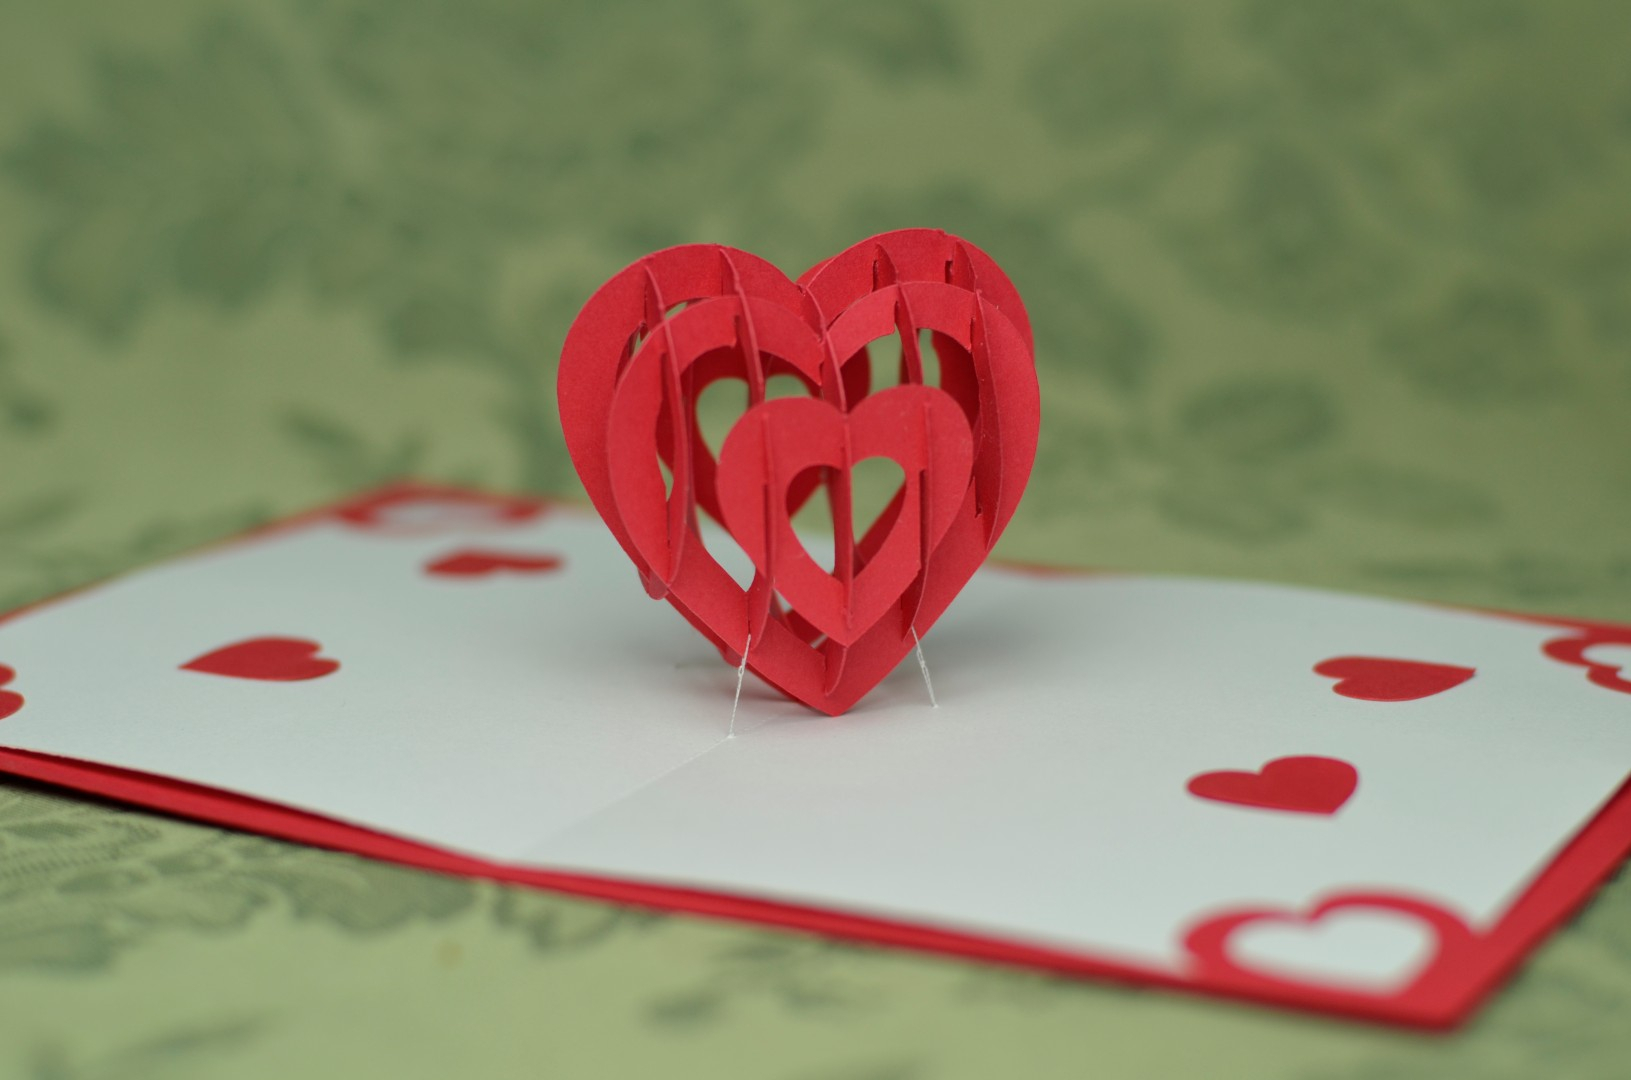 3D Heart Pop Up Card Template With Regard To 3D Heart Pop Up Card Template Pdf